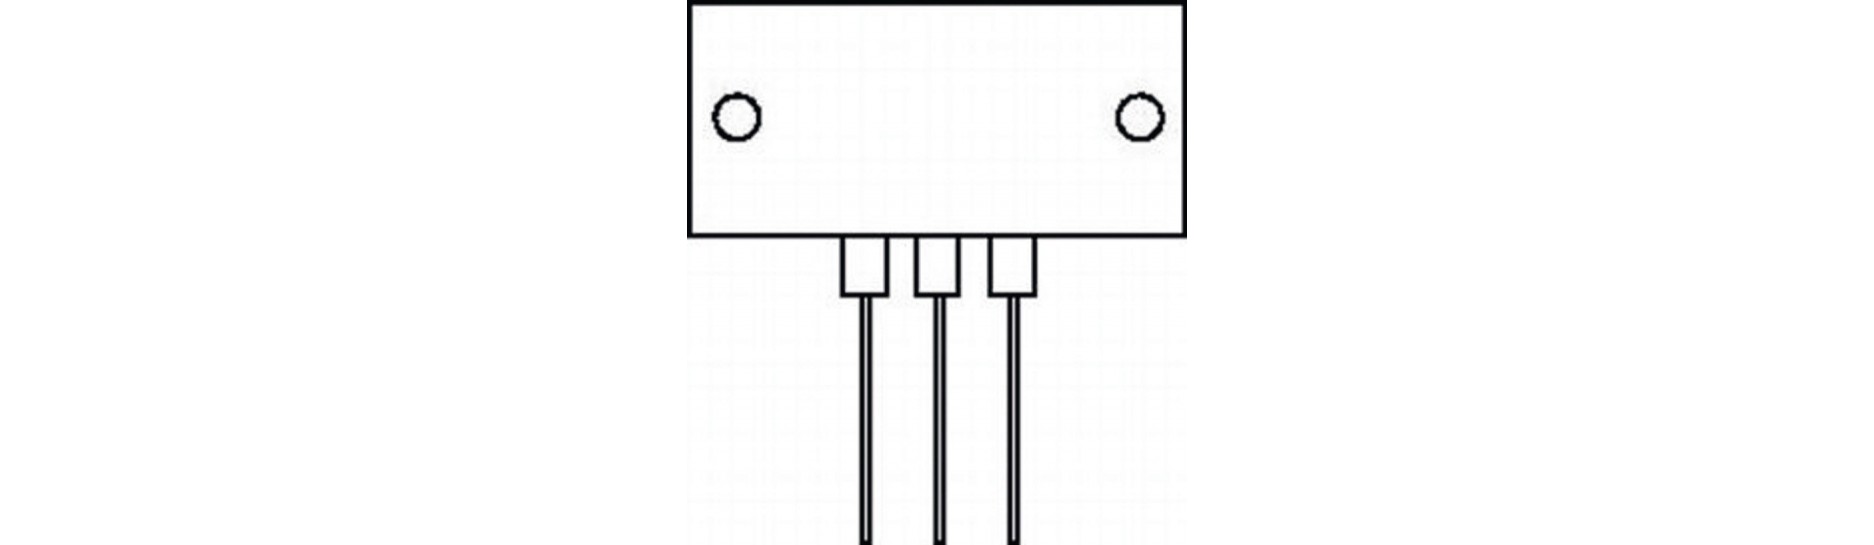 Transistores y Circuitos Integrados